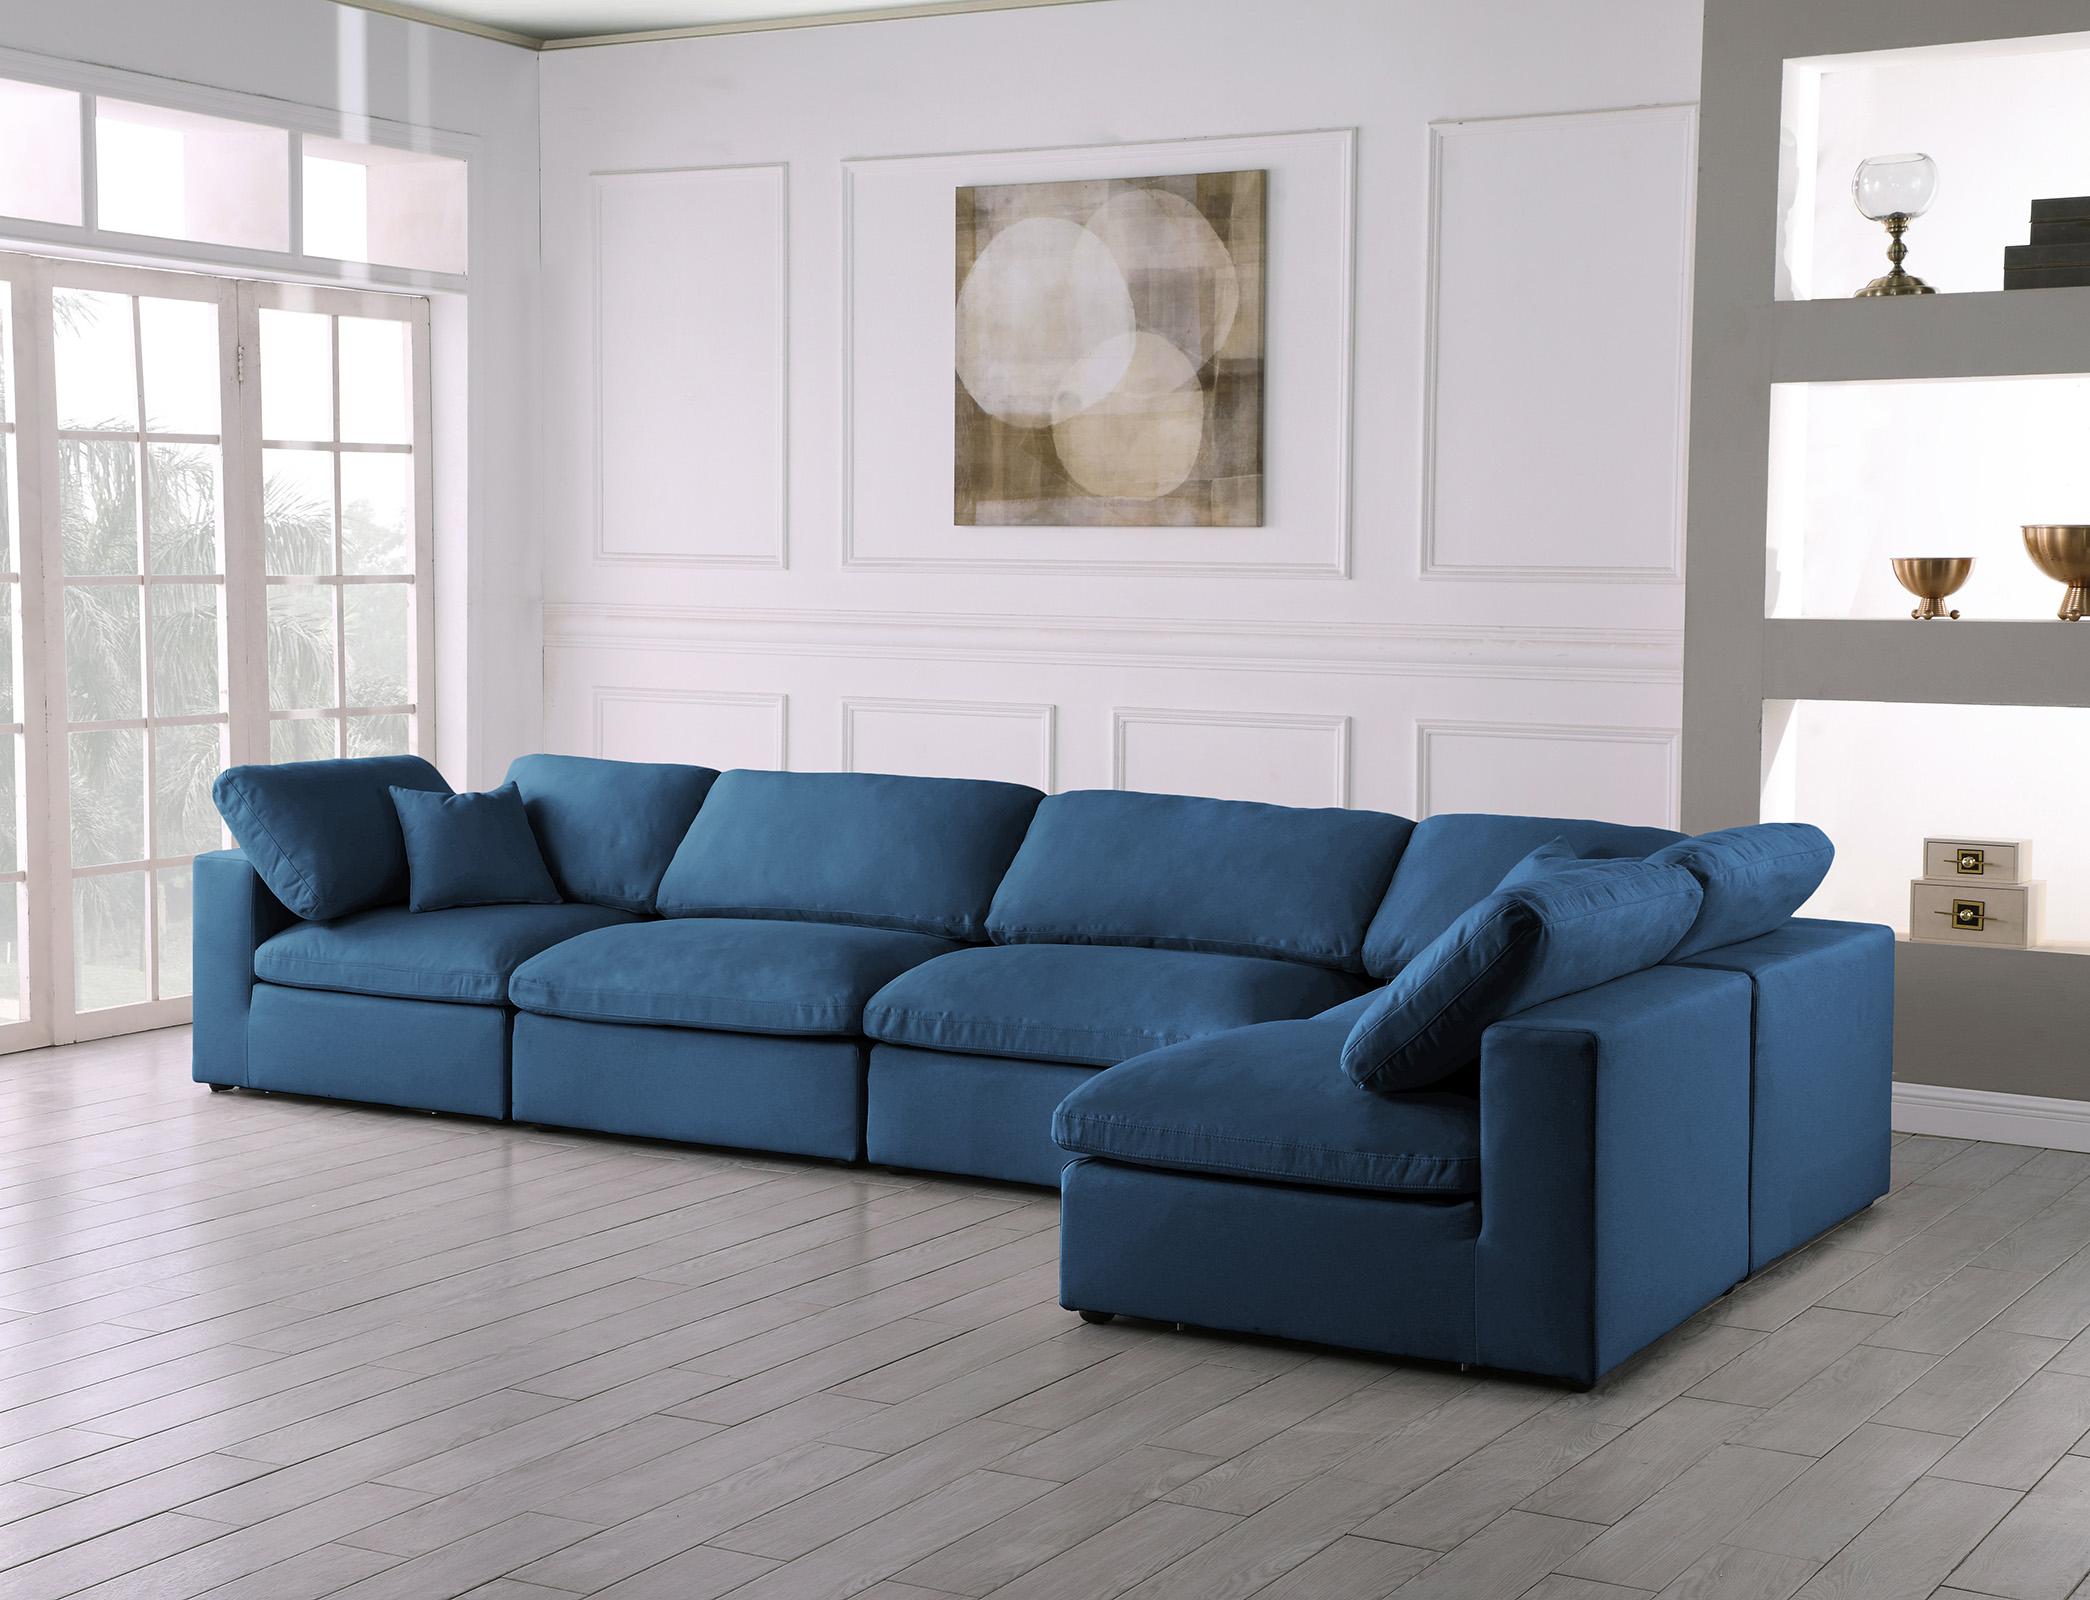 

        
Meridian Furniture 602Navy-Sec5D Modular Sectional Sofa Navy Fabric 094308257938
